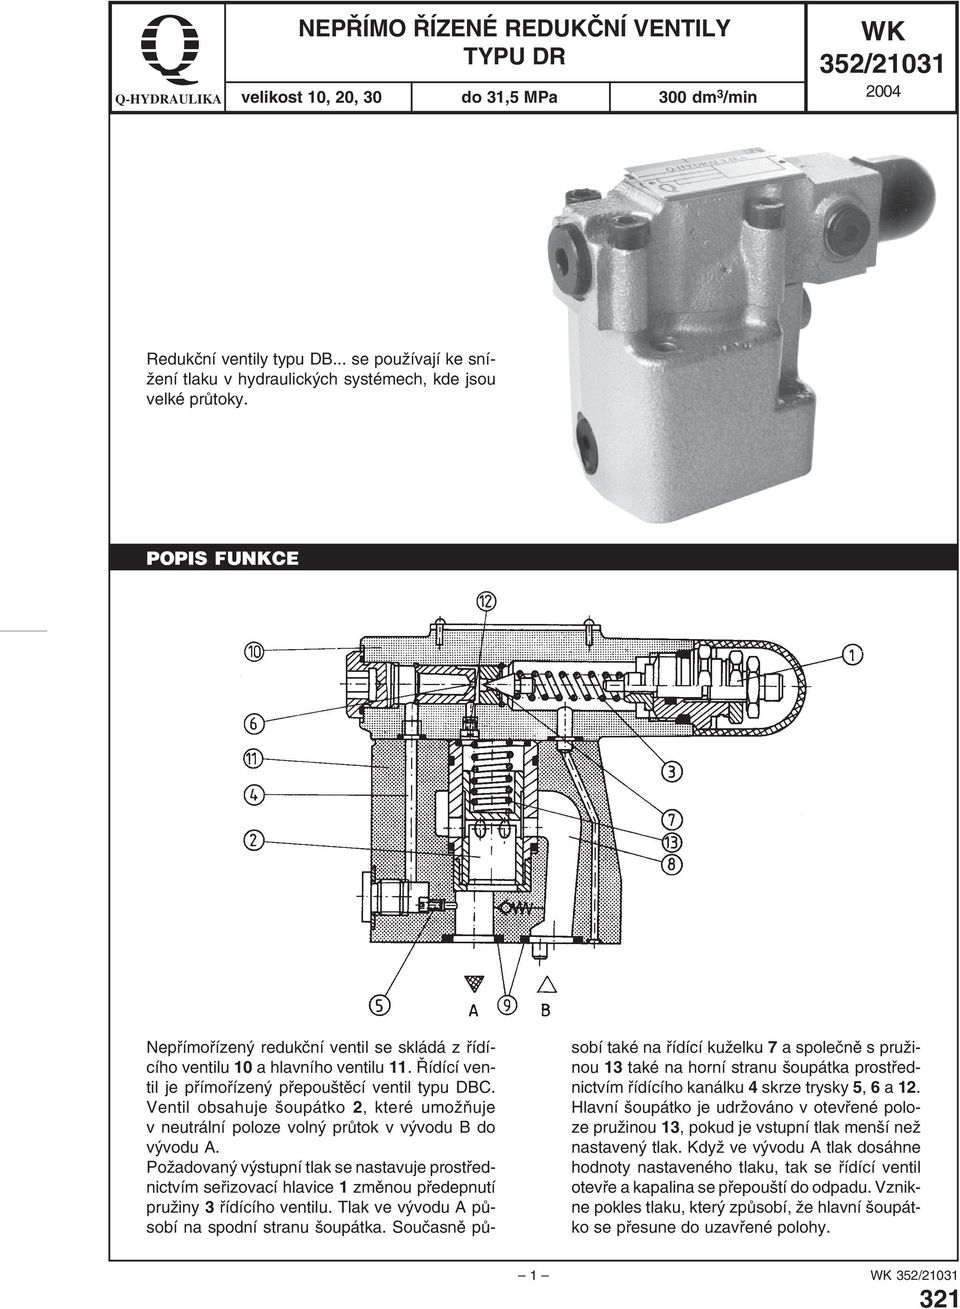 Řídící ventil je přímořízený přepouštěcí ventil typu DBC. Ventil obsahuje šoupátko 2, které umožňuje v neutrální poloze volný průtok v vývodu B do vývodu A.